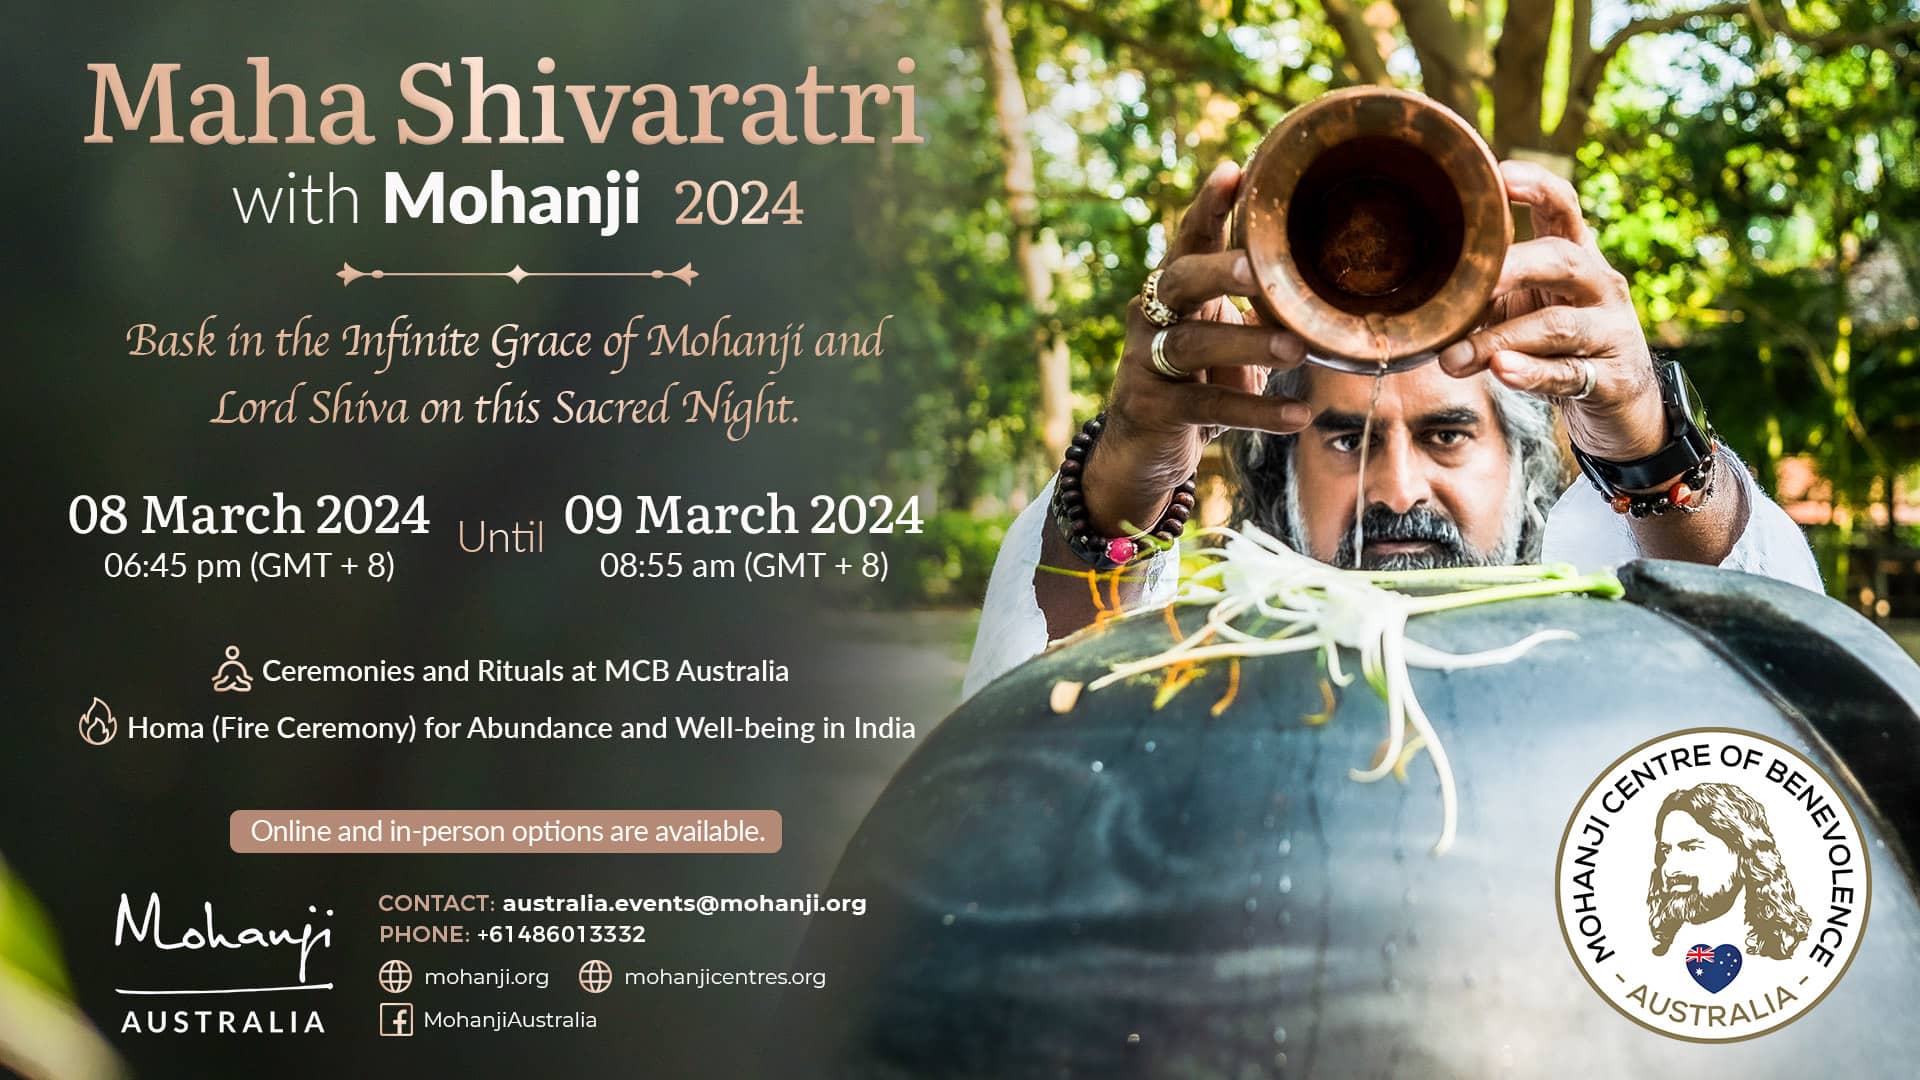 Maha Shivaratri with Mohanji 2024